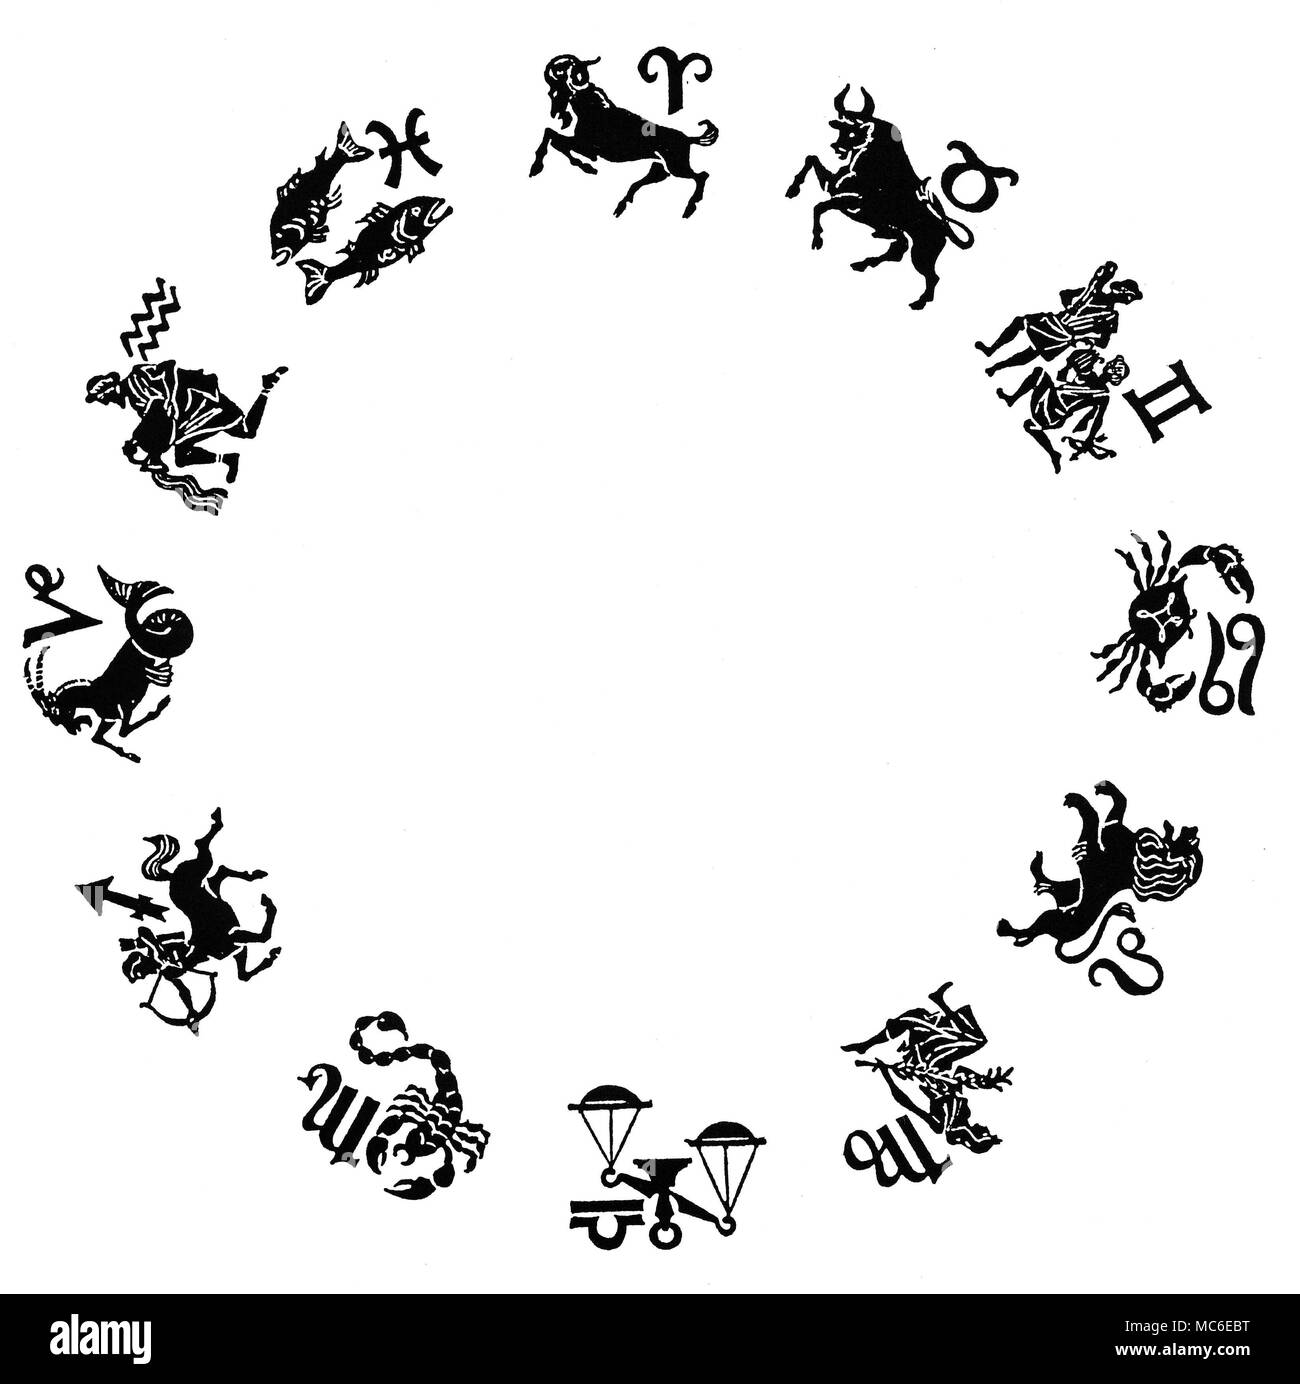 ZODIACS - doce signos del zodiaco de doce imágenes, con sus correspondientes sigils, dispuestas en círculo. En la parte superior es Aries el carnero - en el sentido de las agujas del reloj, siga el TORO Tauro, Géminis los gemelos, puede cer el cangrejo, Leo el león, Virgo, la Virgen, Libra las escalas, Escorpio el escorpión, Sagitario el hombre-caballo (o Centauro con arco y flecha), Capricornio, la Cabra-pez, Acuario el vertedor de agua, y los dos peces de Piscis. Diseñado circa 1920. Foto de stock